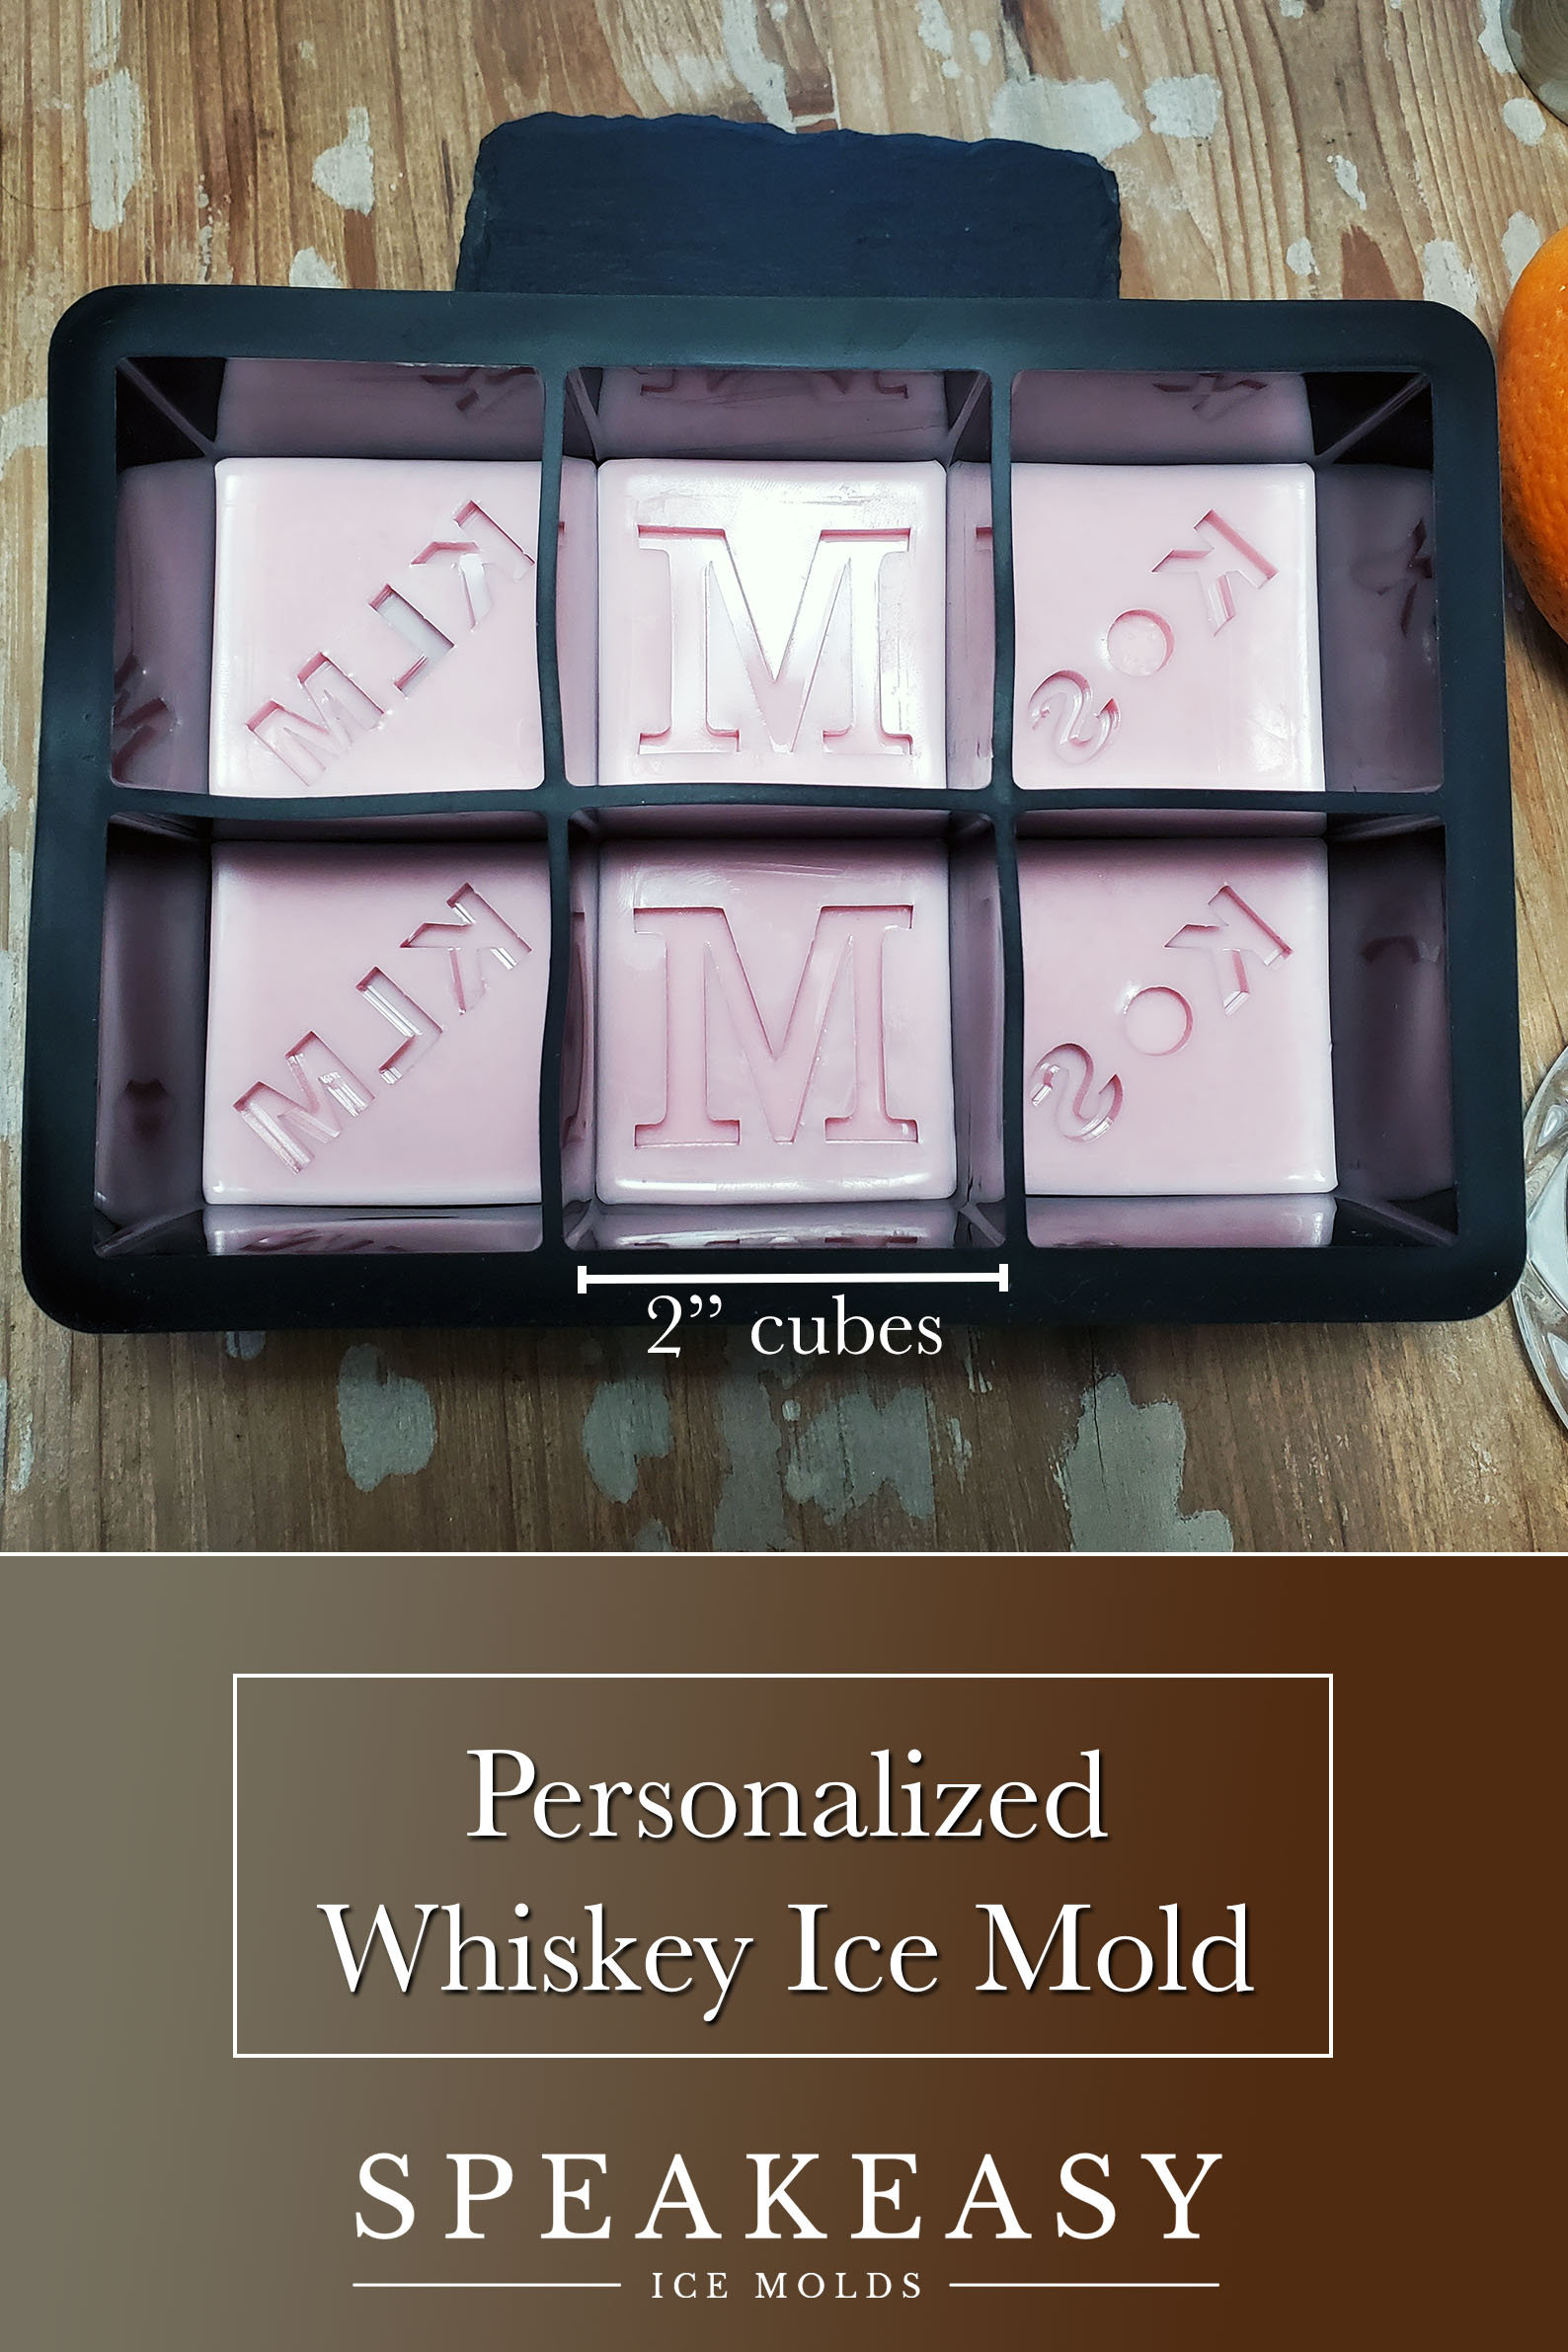 Monogram Whiskey Ice Cubes, Personalized Ice Mold, Custom Silicone Ice Mold,  Custom Whiskey Gift, Personalized Gift for Him, Whiskey Ice 